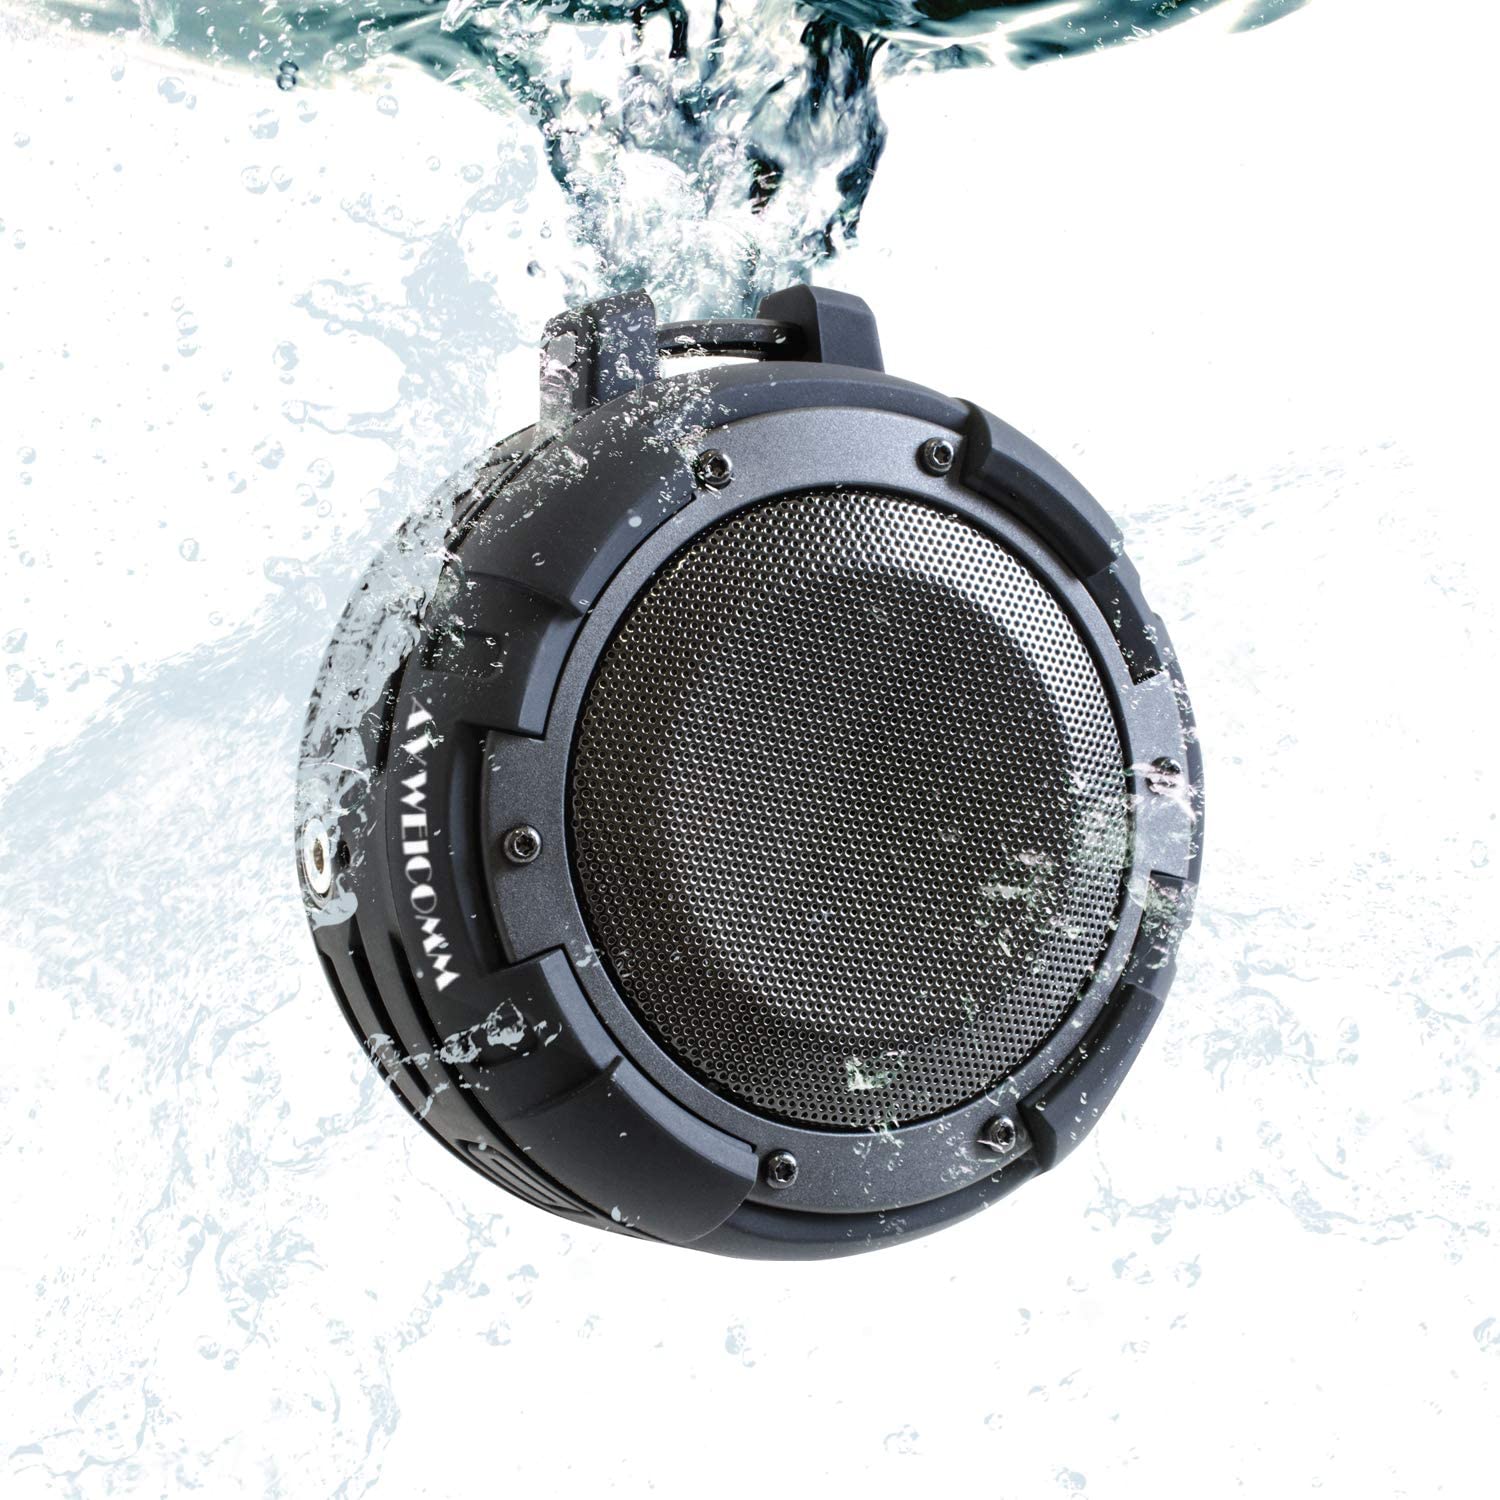 KYOHAYA Bluetooth 5.0 スピーカー 1145 アウトドア 防水 IPX8 風呂 吸盤 高音質 重低音 大音量 車 小型 コンパクト ポータブル マイク付き 5W出力 カラビナ付属 吸盤マウント付属 ロールバー…